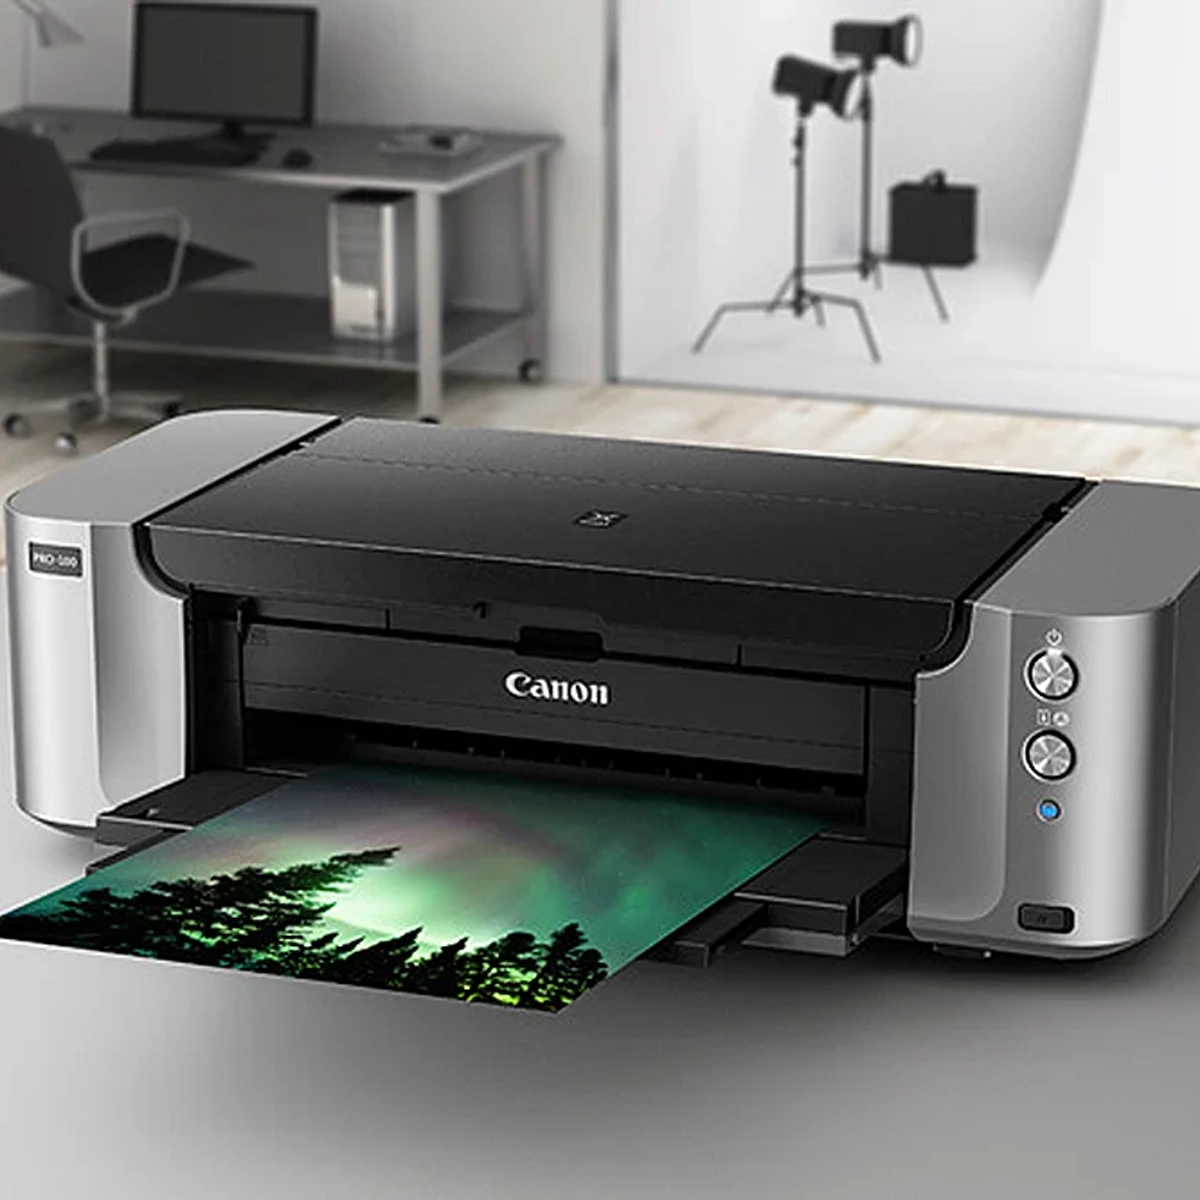 Canon Pro-100 Printer Printing Picture Of Aurora Borealis